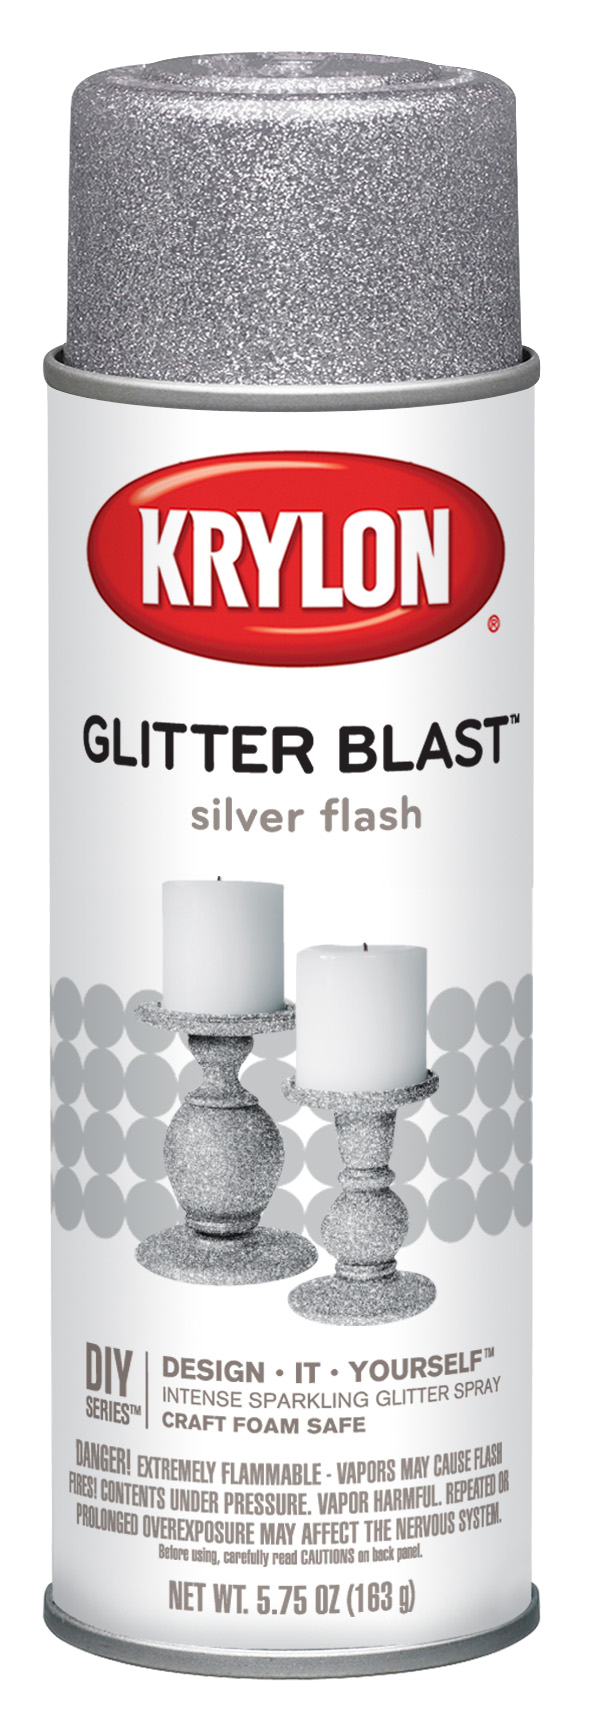 5.75oz Krylon Glitter Blast Craft Spray (Silver Flash) $1.50 + Free Shipping w/ Walmart+ or on orders $35+